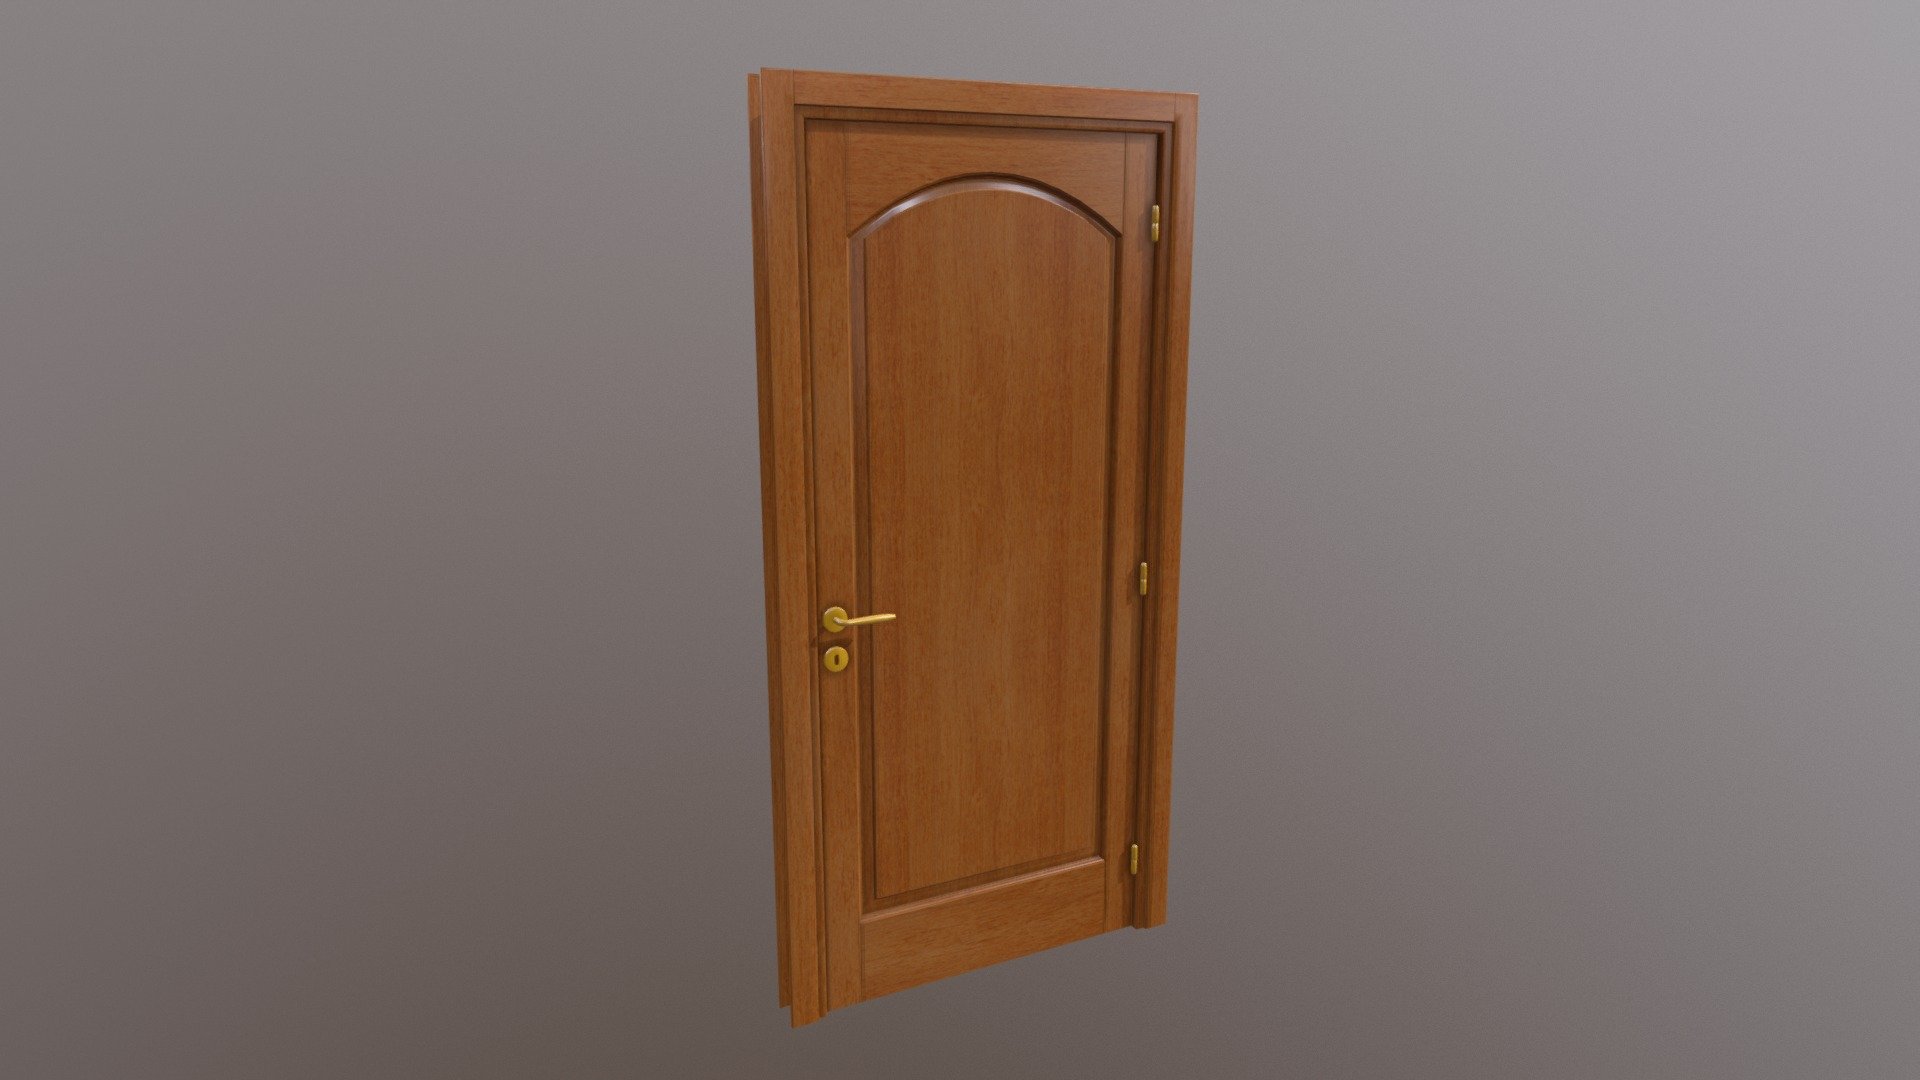 3d model of wooden door, High quality details, textured - Wooden Door - 3D model by BytePost (@Simone9) 3d model